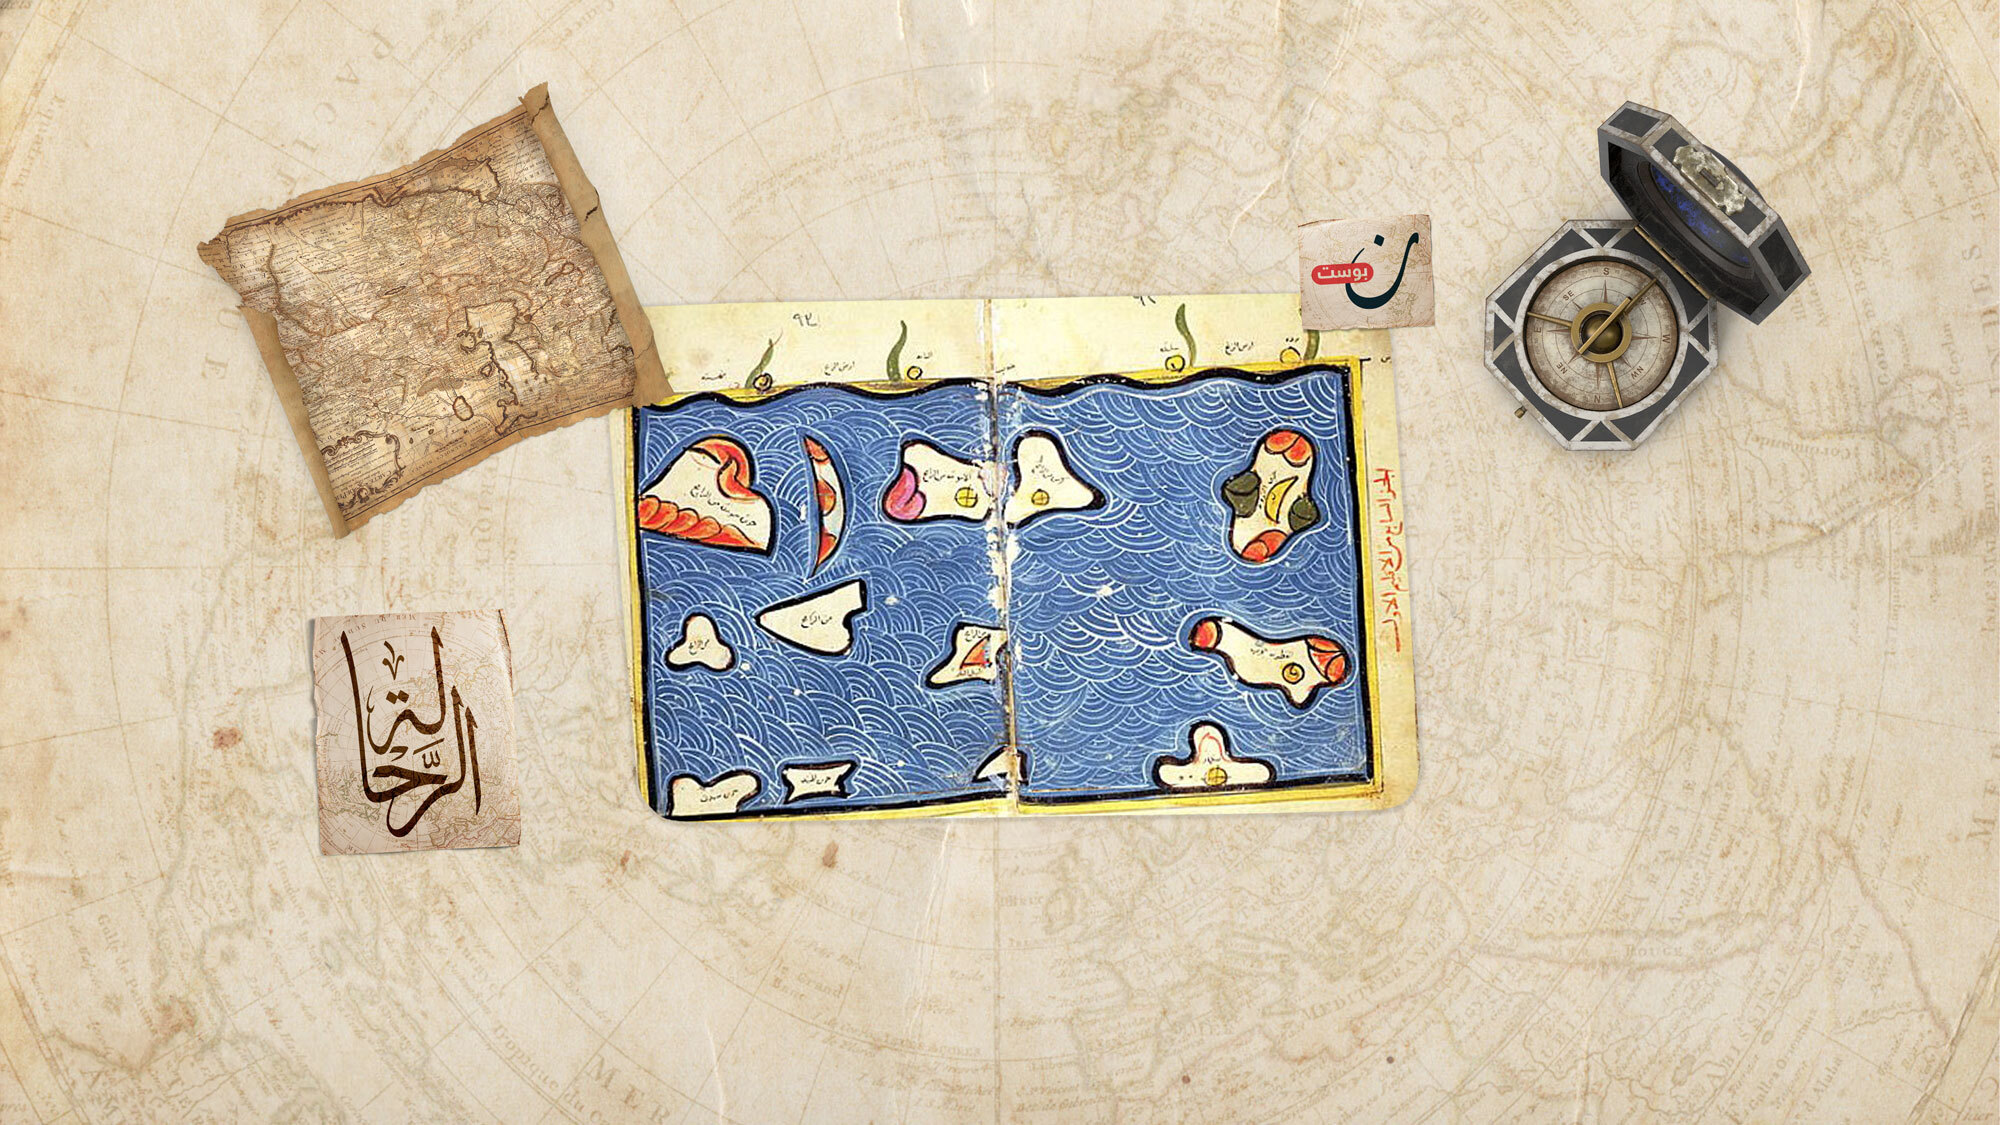 خليج سان بطرسبرج يظهر في خريطة للإدريسي، ويظهر بحر الشمال مرمرة ، شبه جزيرة غاليبولي ، بحر إيجة ، دلتا نهر ماريتسا، منطقة مقدونيا ، أجزاء من وسط اليونان.